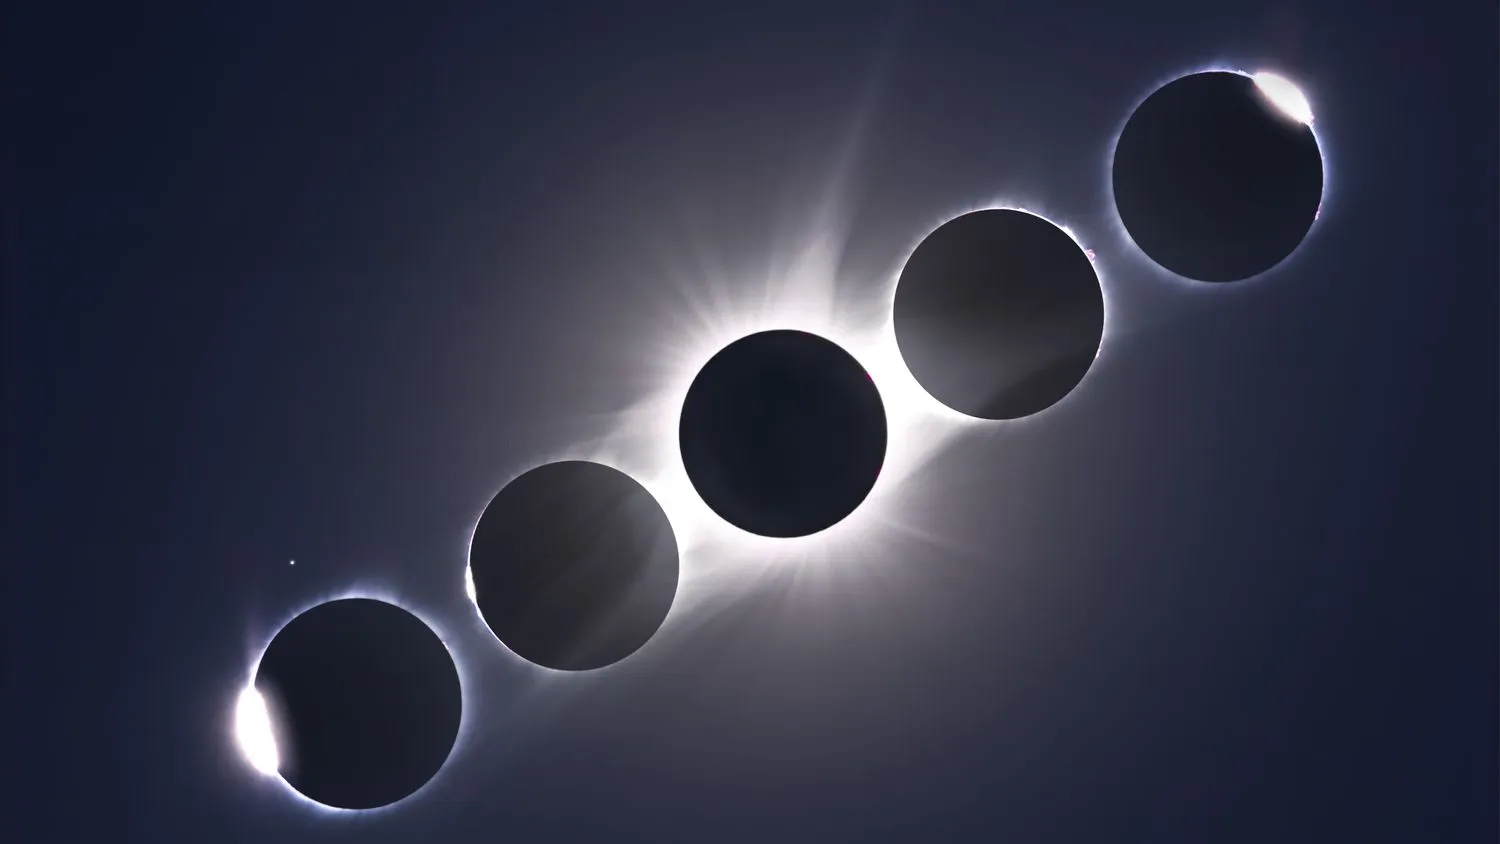 Ein Kompositbild der totalen Sonnenfinsternis vom 21. August 2017, das die Diamantringe des zweiten und dritten Kontakts und die Baily's Beads am Anfang links und am Ende rechts der Totalität zeigt, die ein Kompositbild der Totalität selbst flankieren Die Diamantring- und Baily's Beads-Bilder sind Einzelbilder